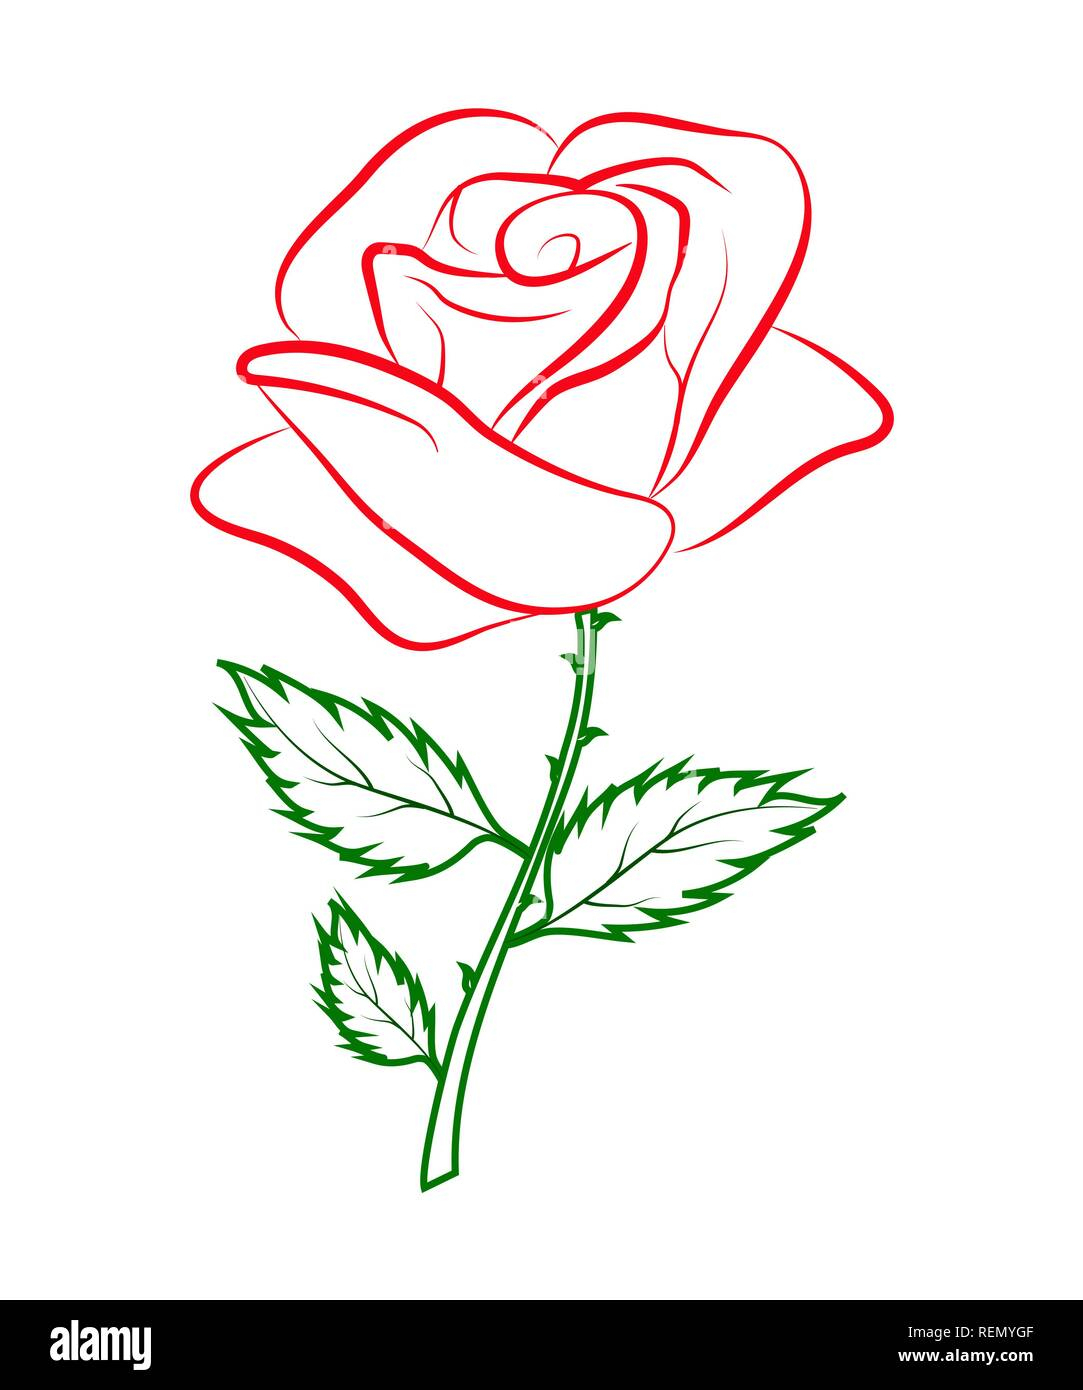 Contour Simple Dessin Couleur D&amp;#039;Une Rose Rouge Sur Un pour Dessin Facile De Rose 